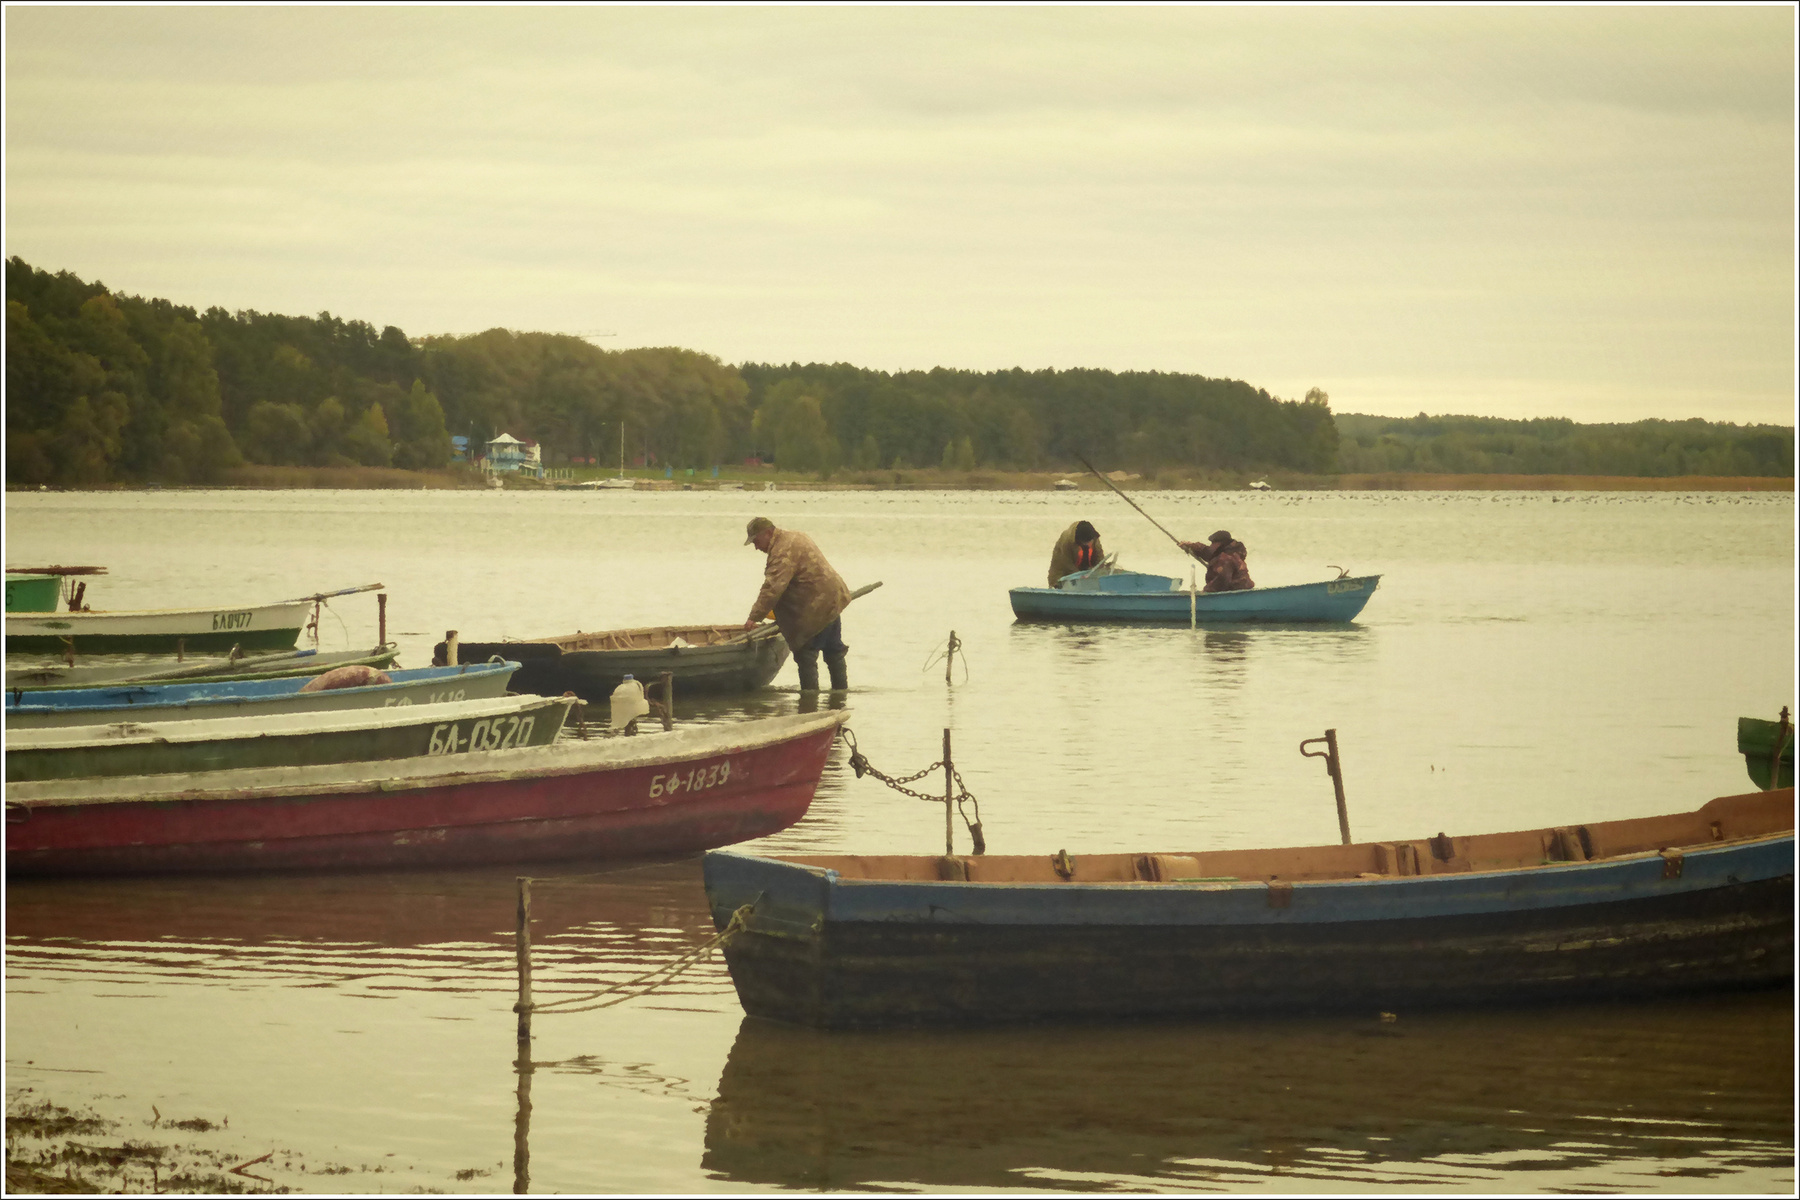 *Рыбаки на озере Нарочь* фотография путешествия Нарочь Белоруссия озеро лето рыбалка жанр Фото.Сайт Светлана Мамакина Lihgra Adventure